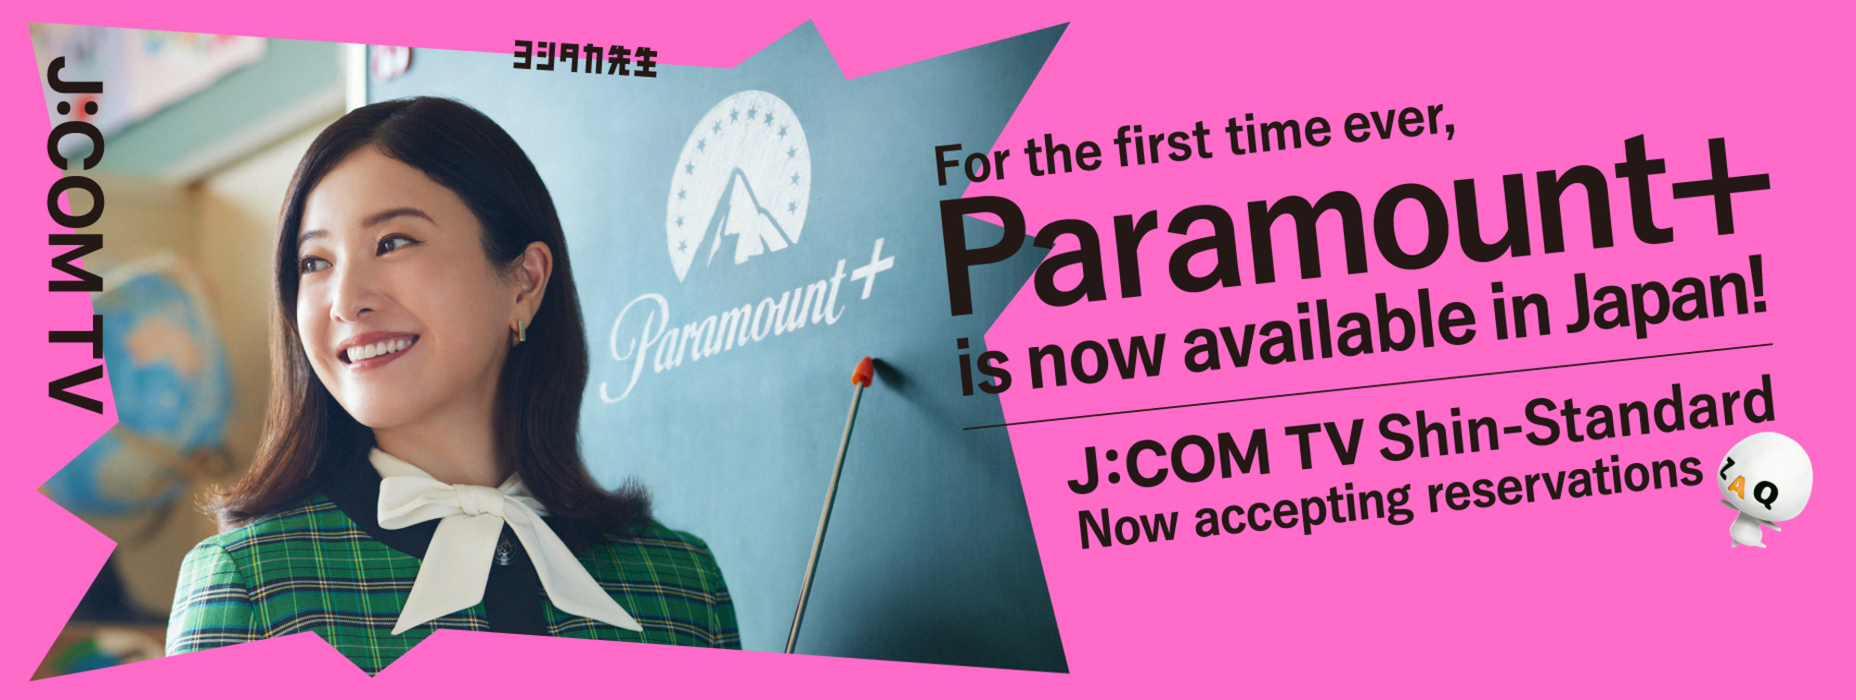 J:COM × Paramount＋ J:COM TV 신·스탠다드 등장! 예기치 않은 프로그램과의 만남도 보고 싶었던 프로그램과의 만남도